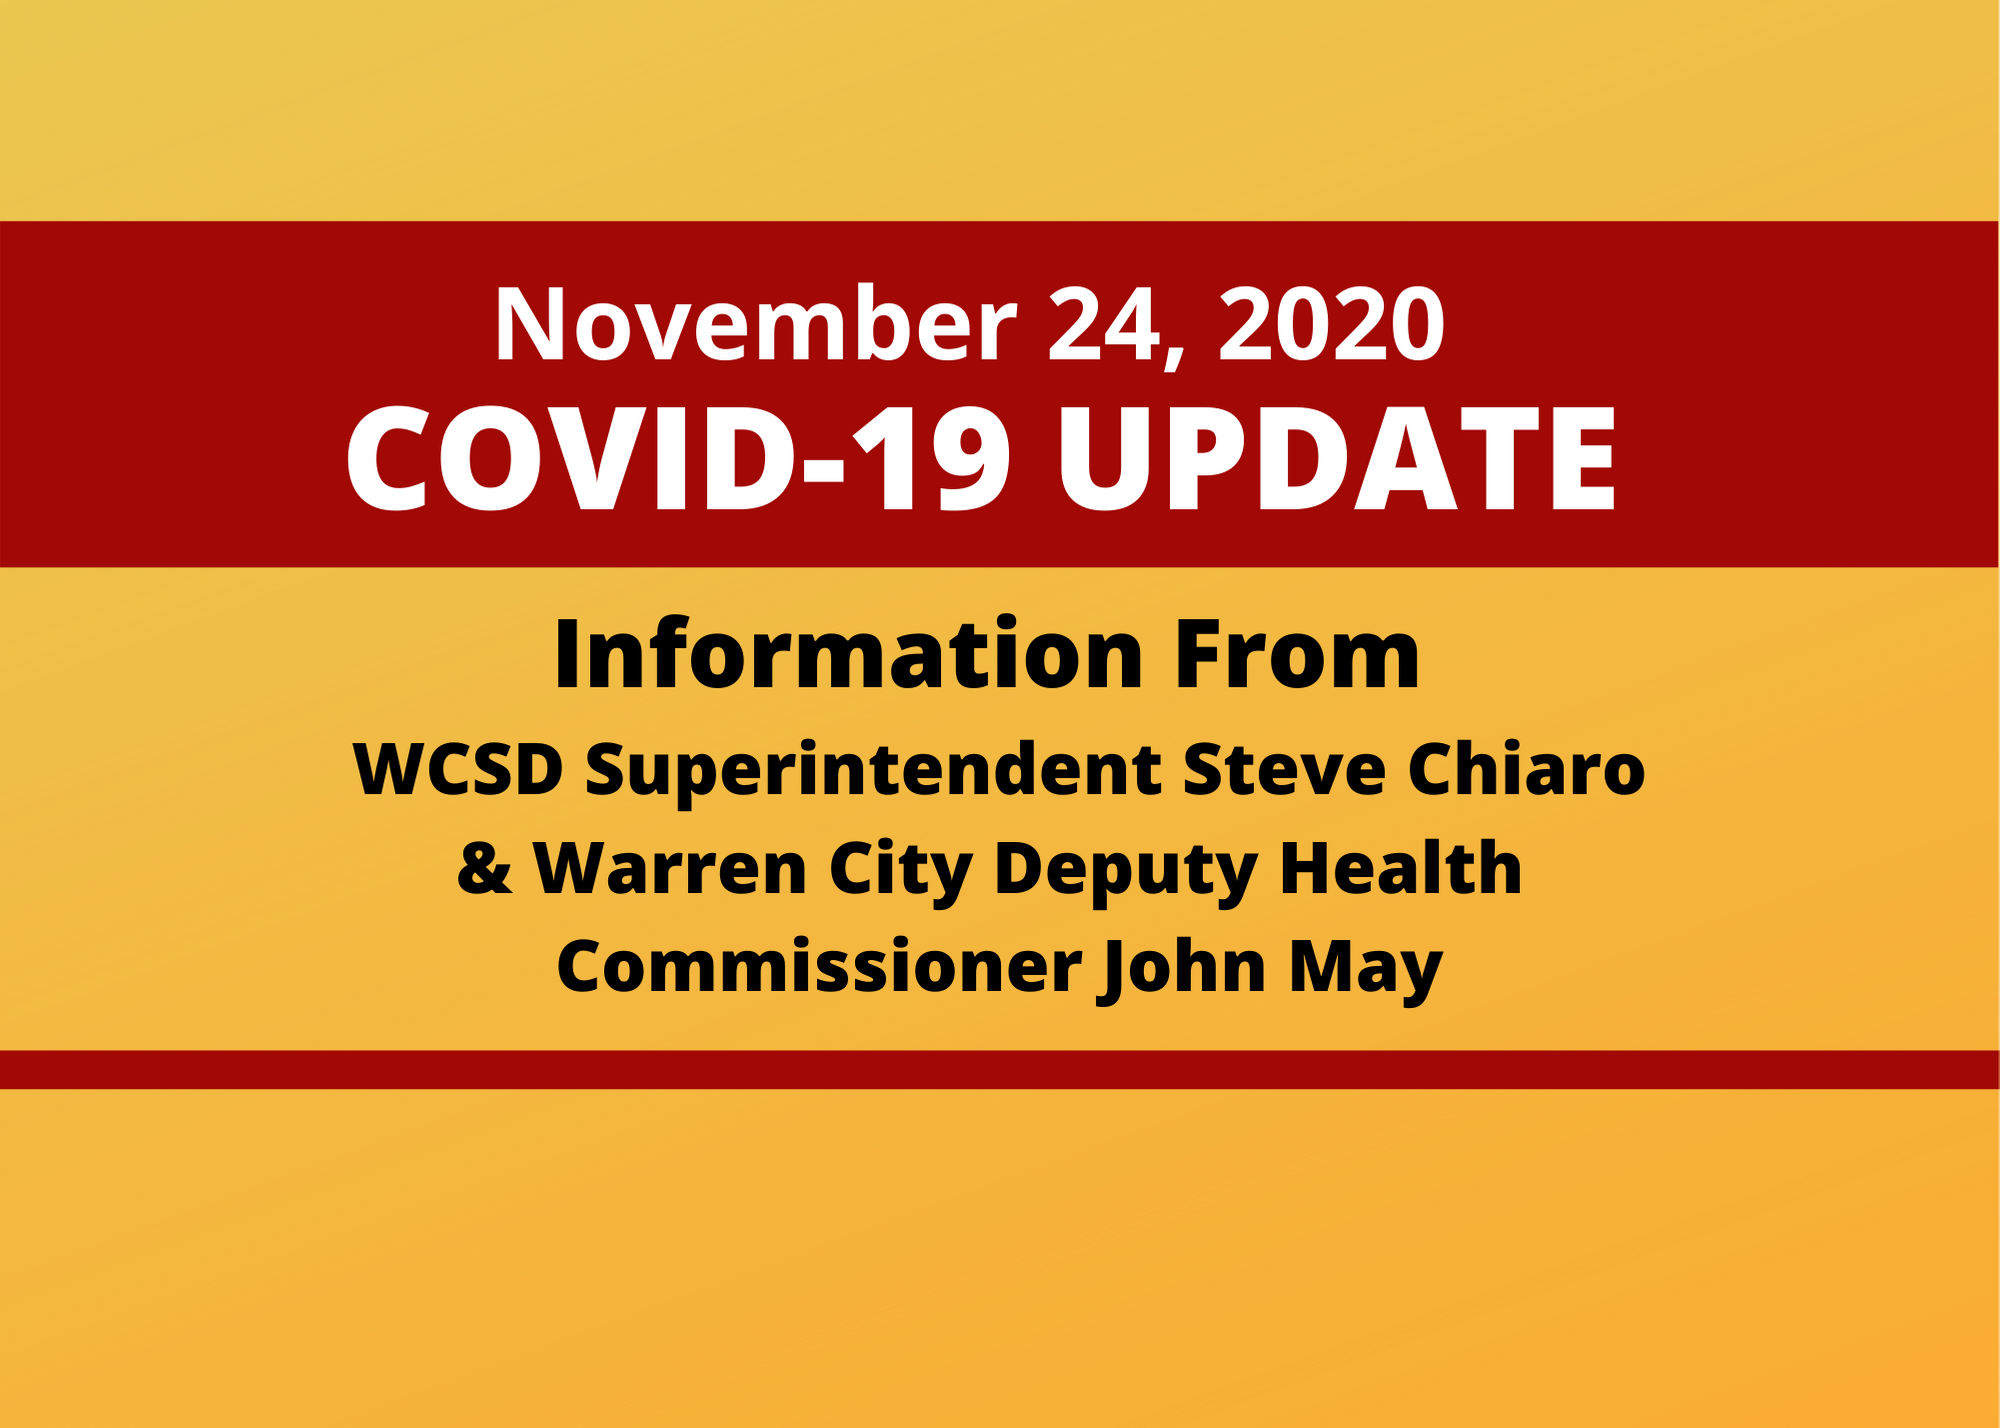 Warren City Deputy Information from WCSD Superintendent Steve Chiaro, John May